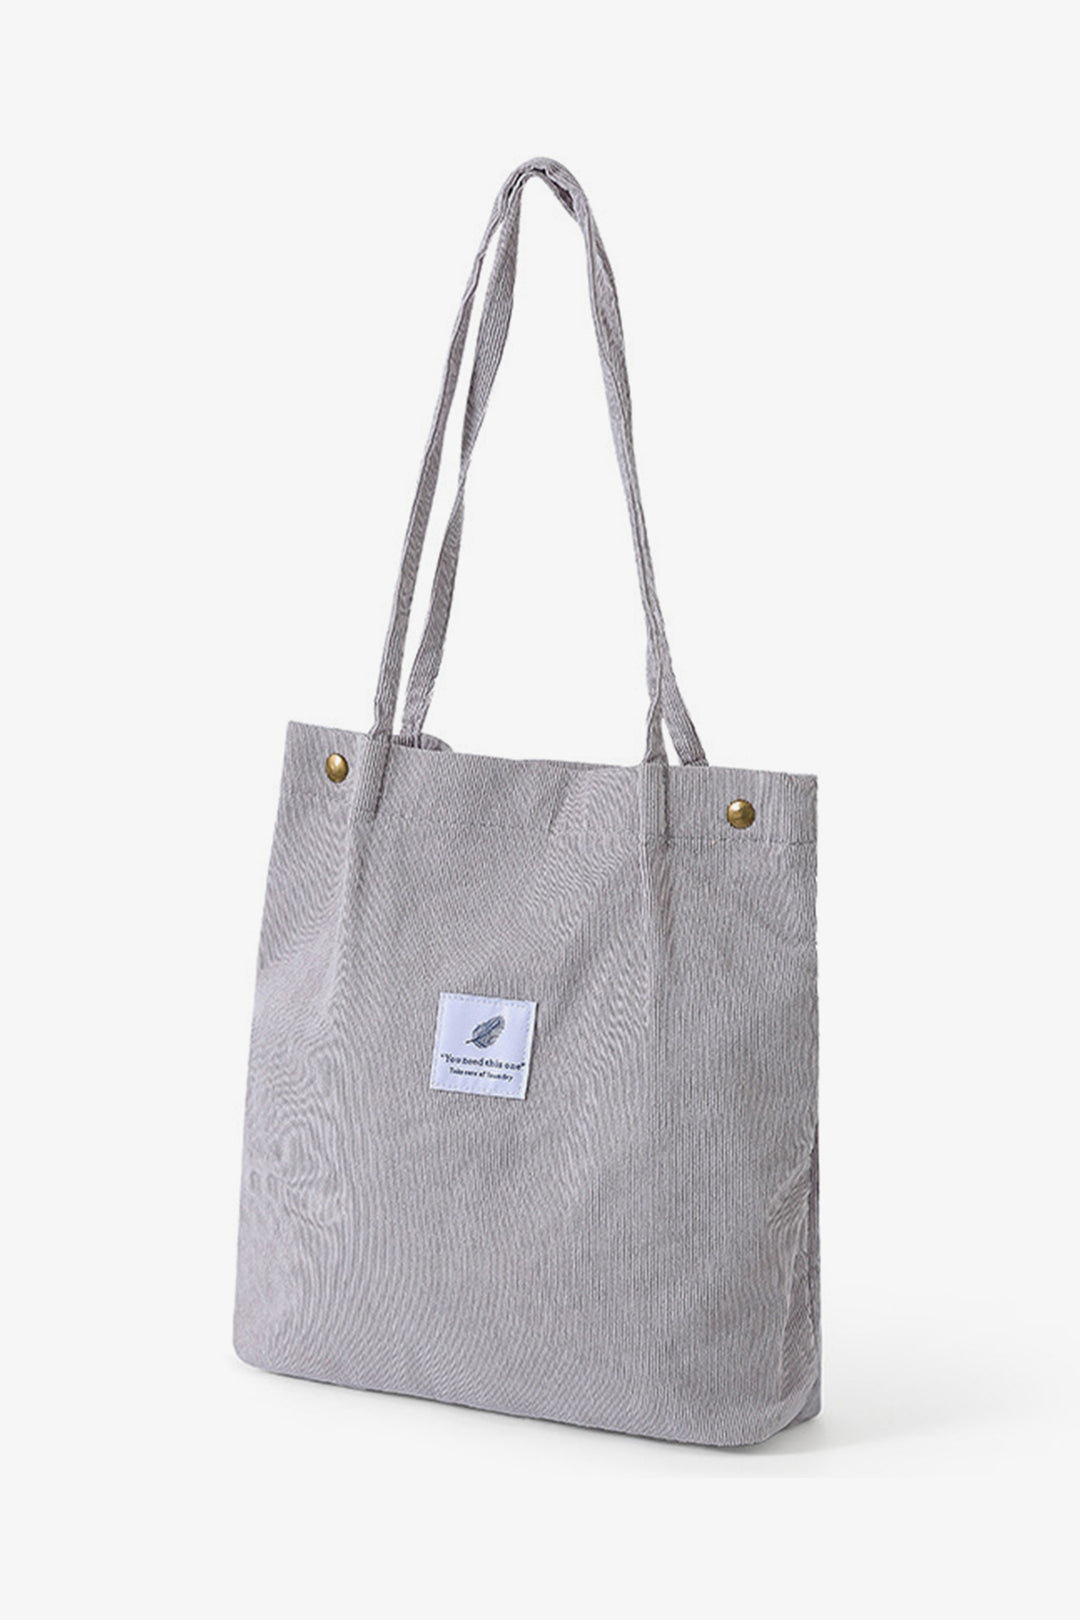 Grey Striped Velvet Bag - S22 - WHB0027